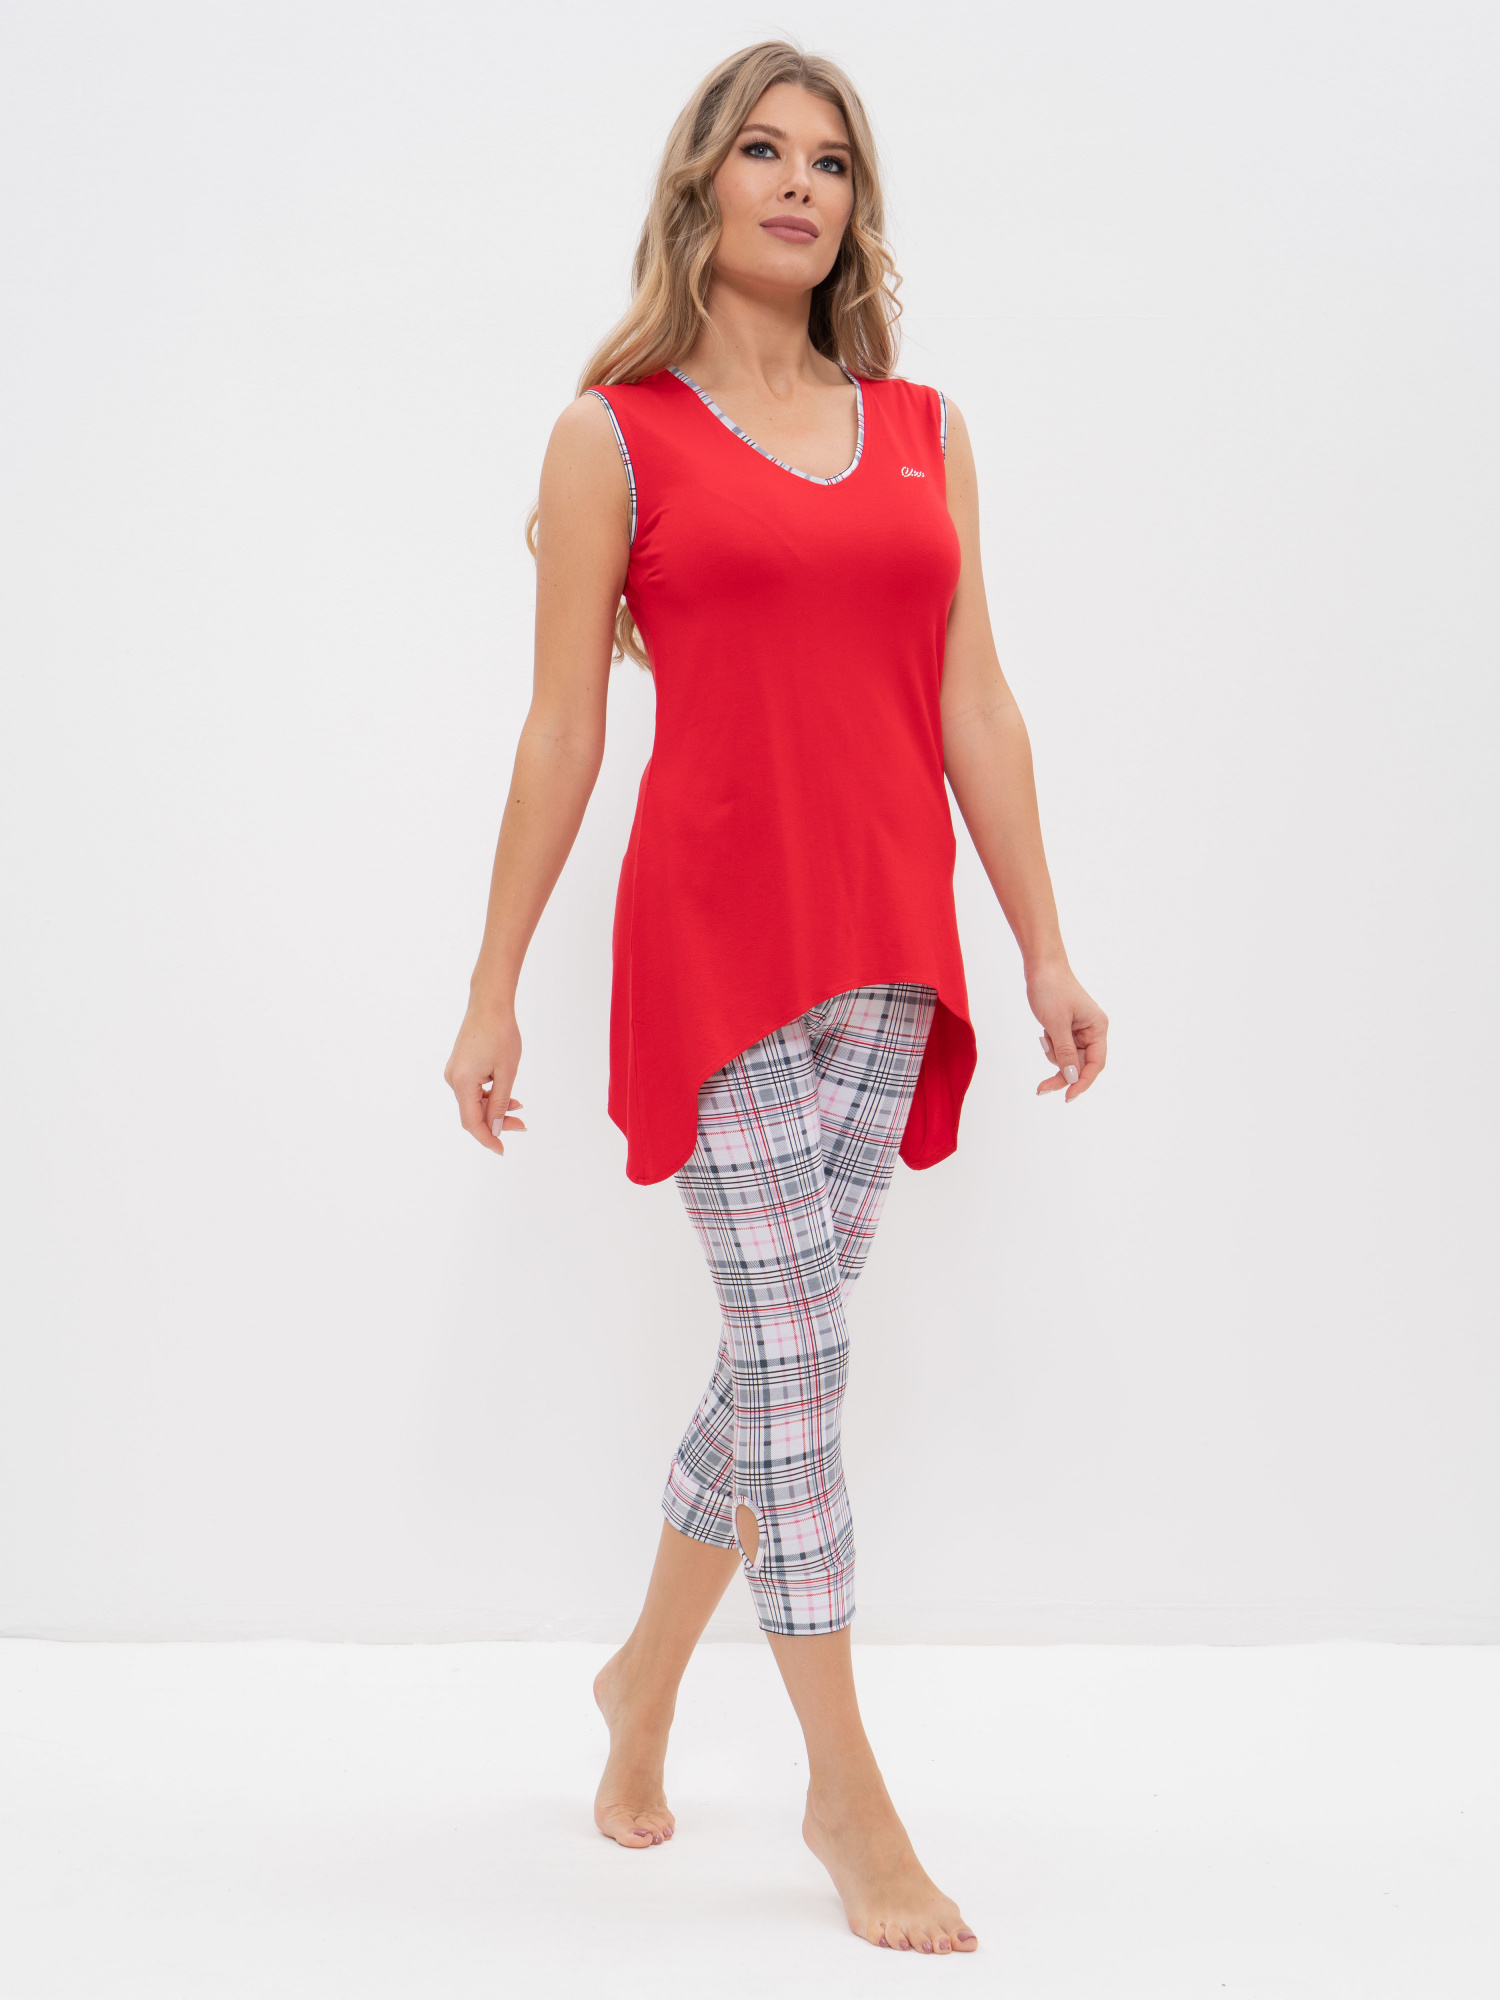 Пижама с бриджами (Размер 44 Цвет красный, серый)